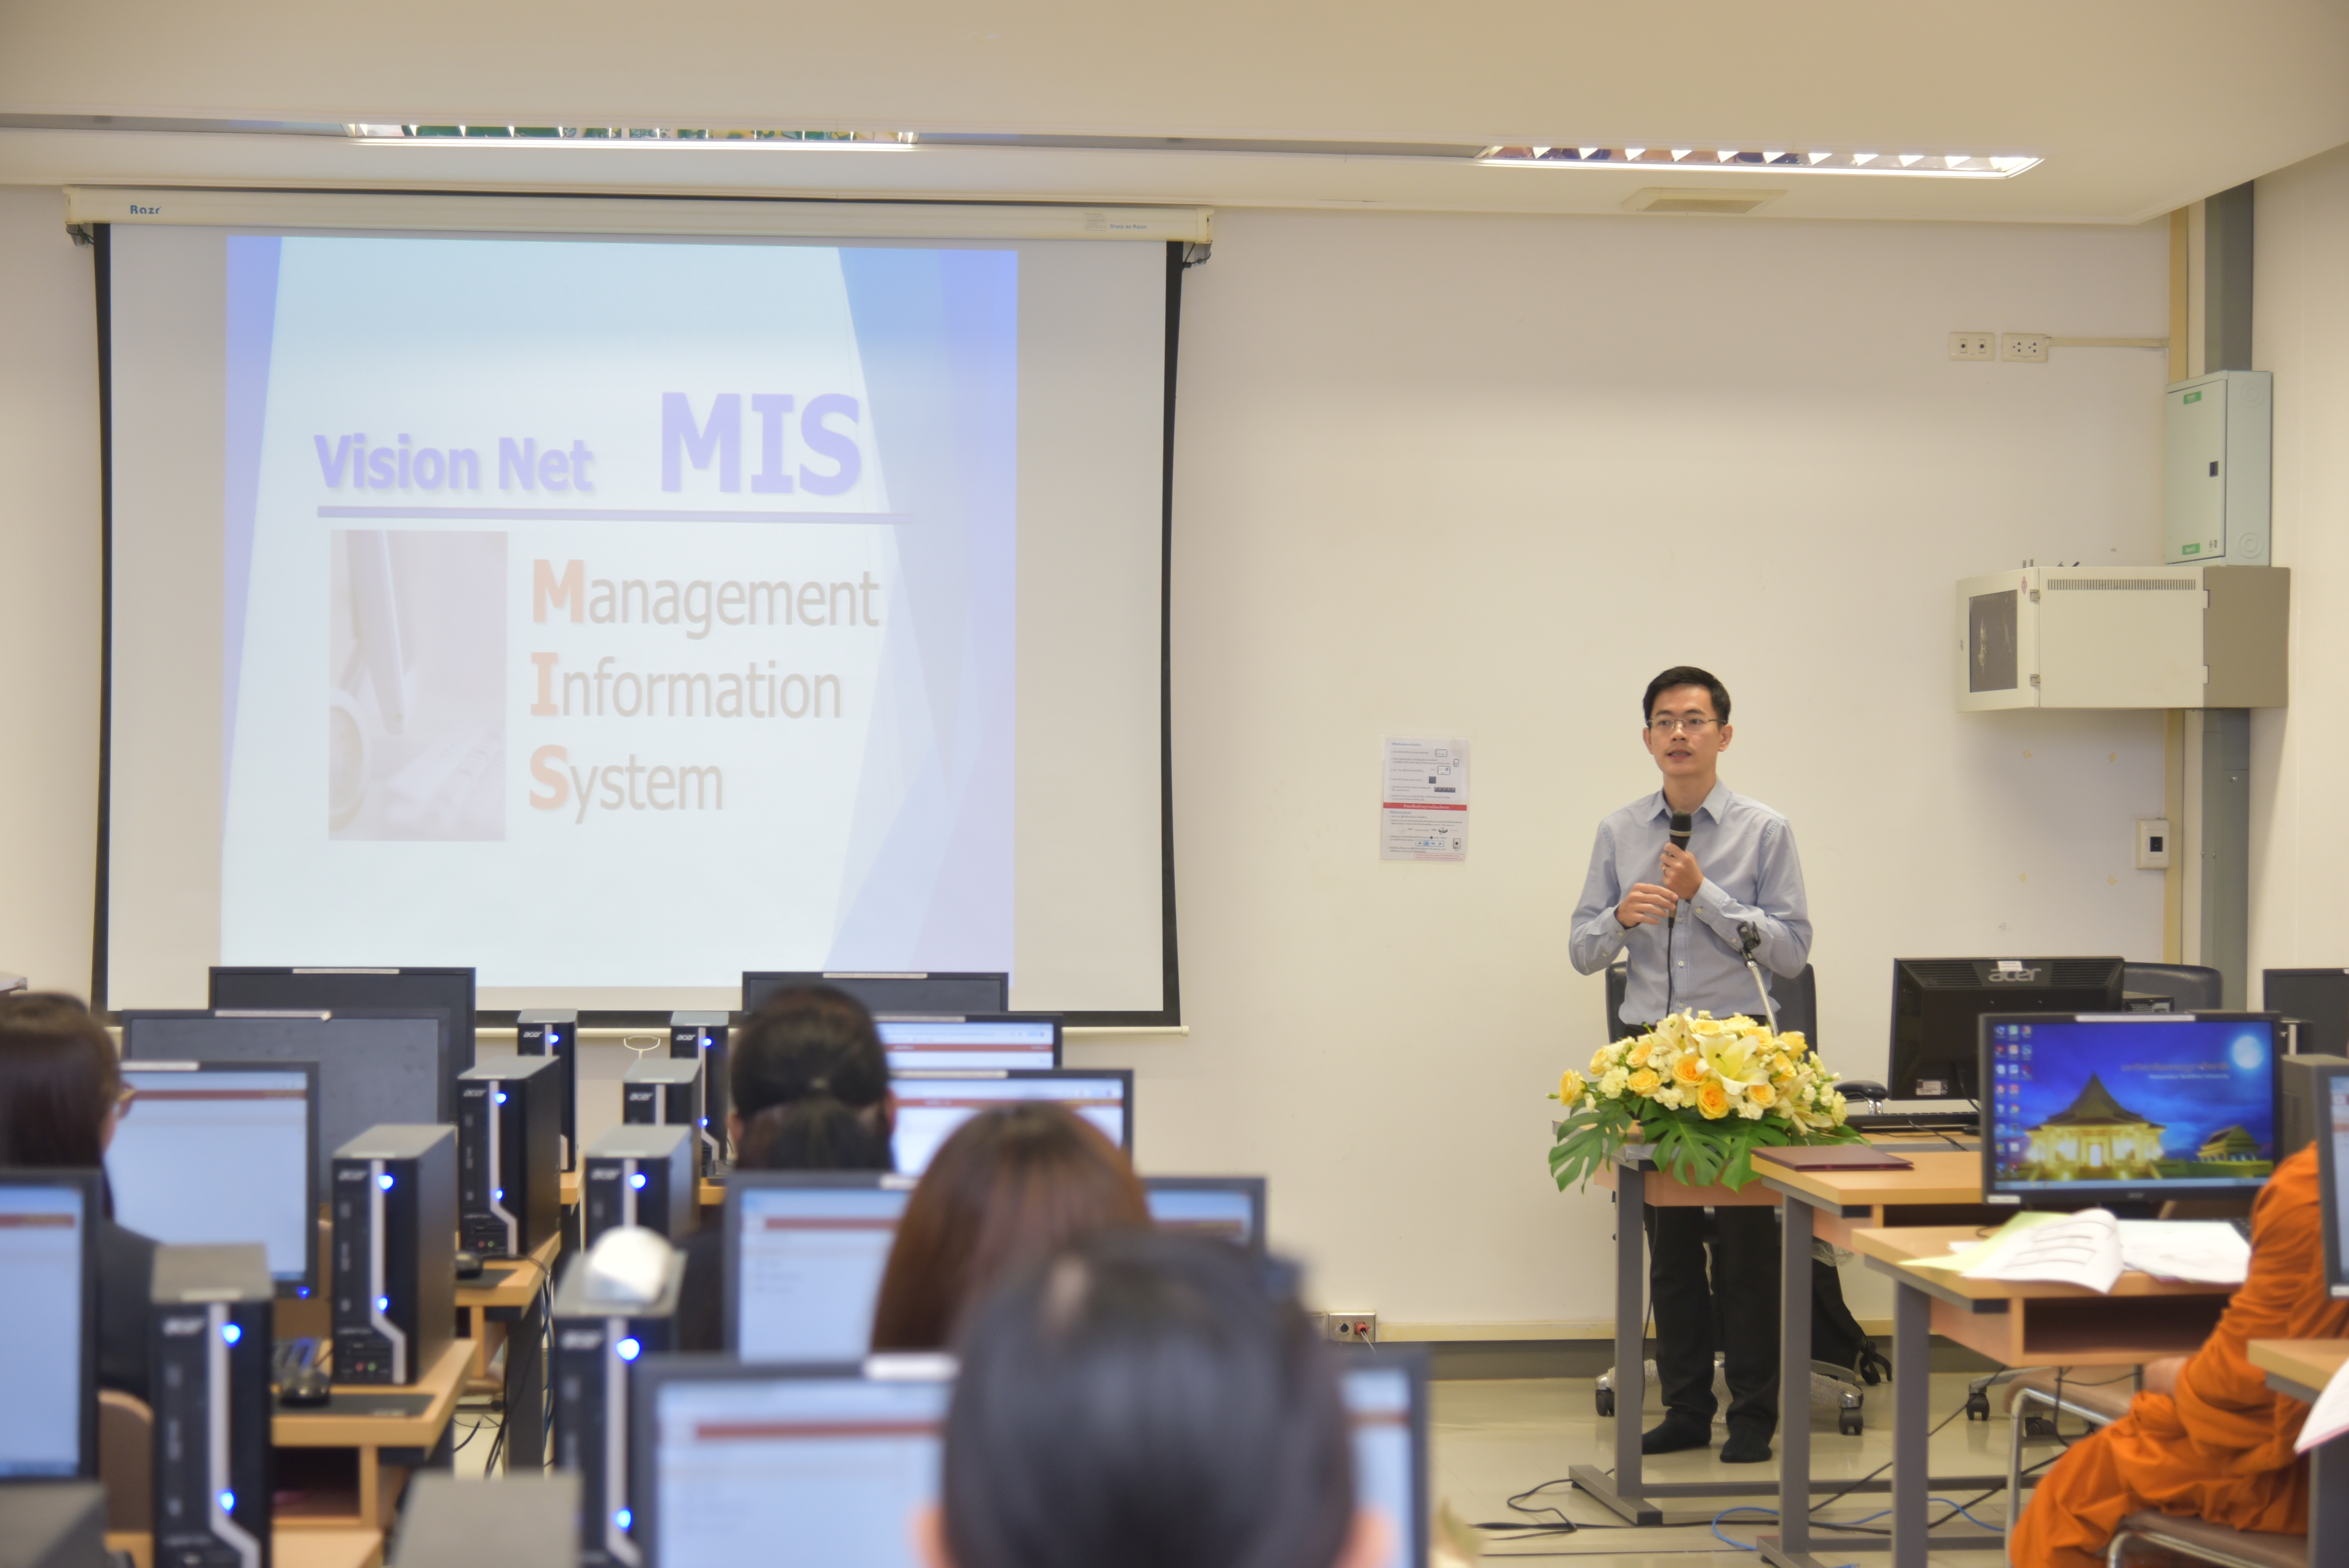 มมร จัดโครงการอบรมระบบสารสนเทศเพื่อการบริหาร (MIS : Management Information System)